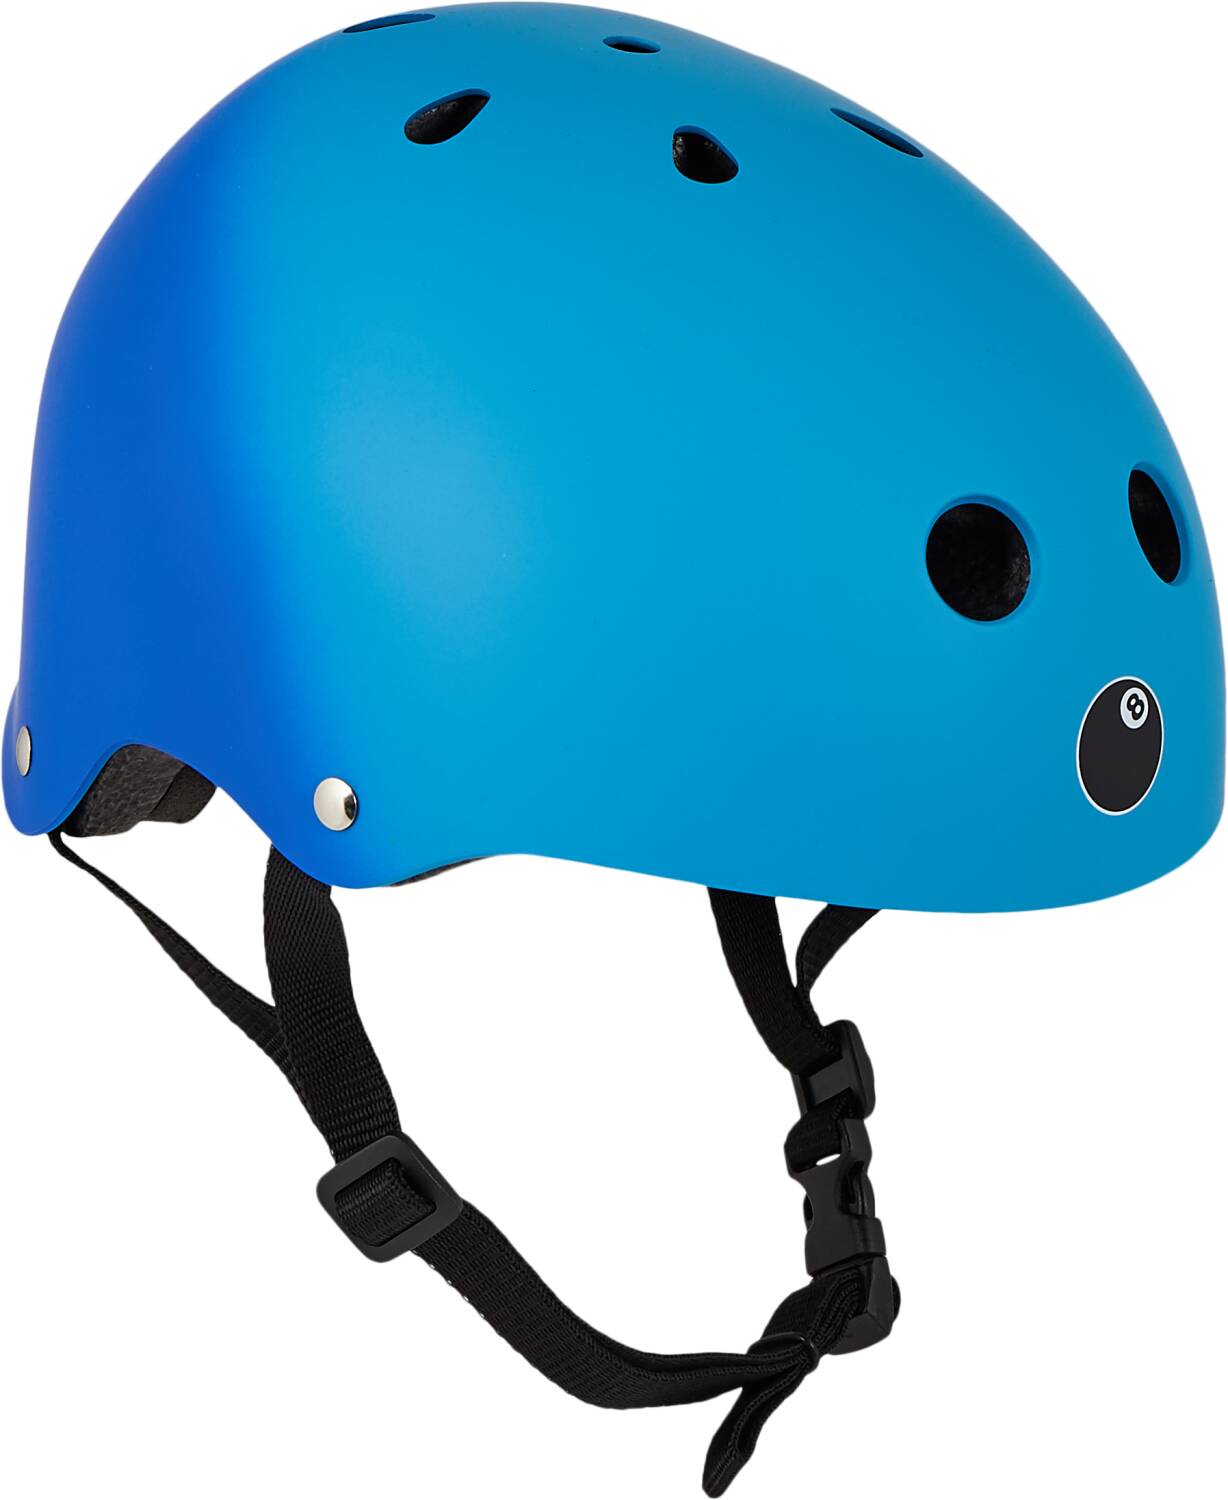 Eight Ball Skate Helmet - Blue